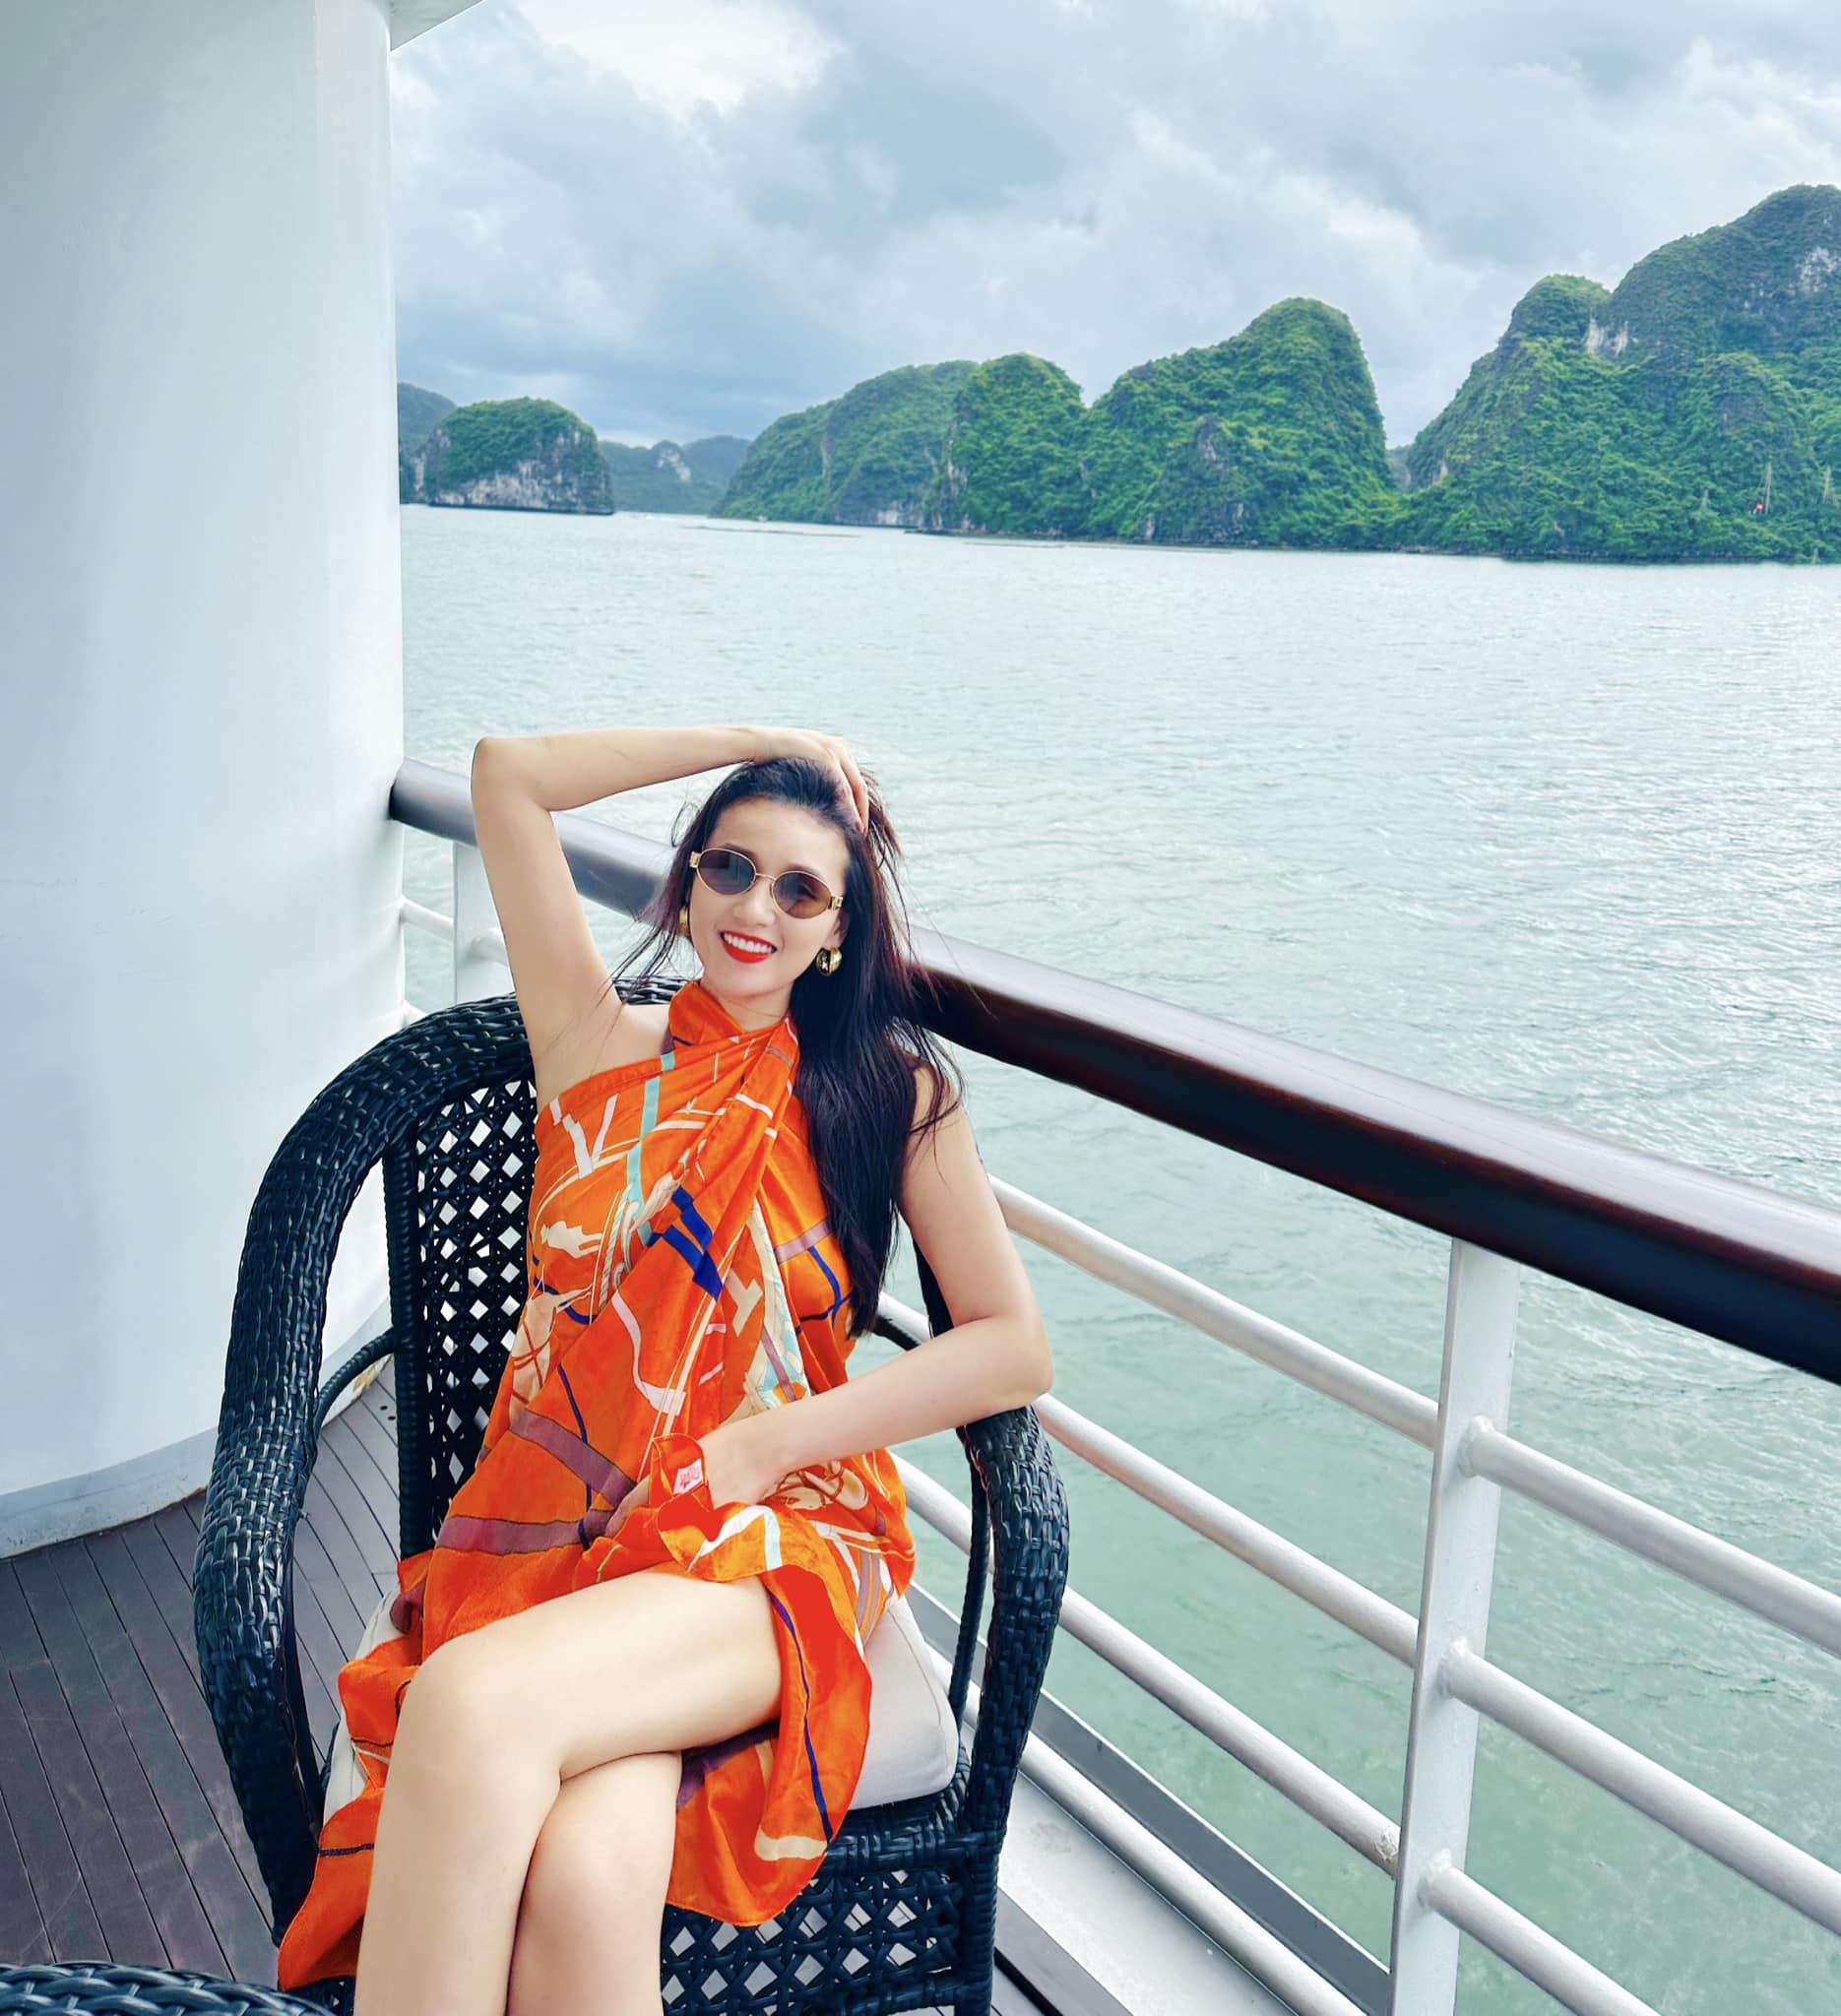 Chọn bikini cut out 'cực cháy' đi biển như nữ diễn viên đại gia Lã Thanh Huyền - Ảnh 11.